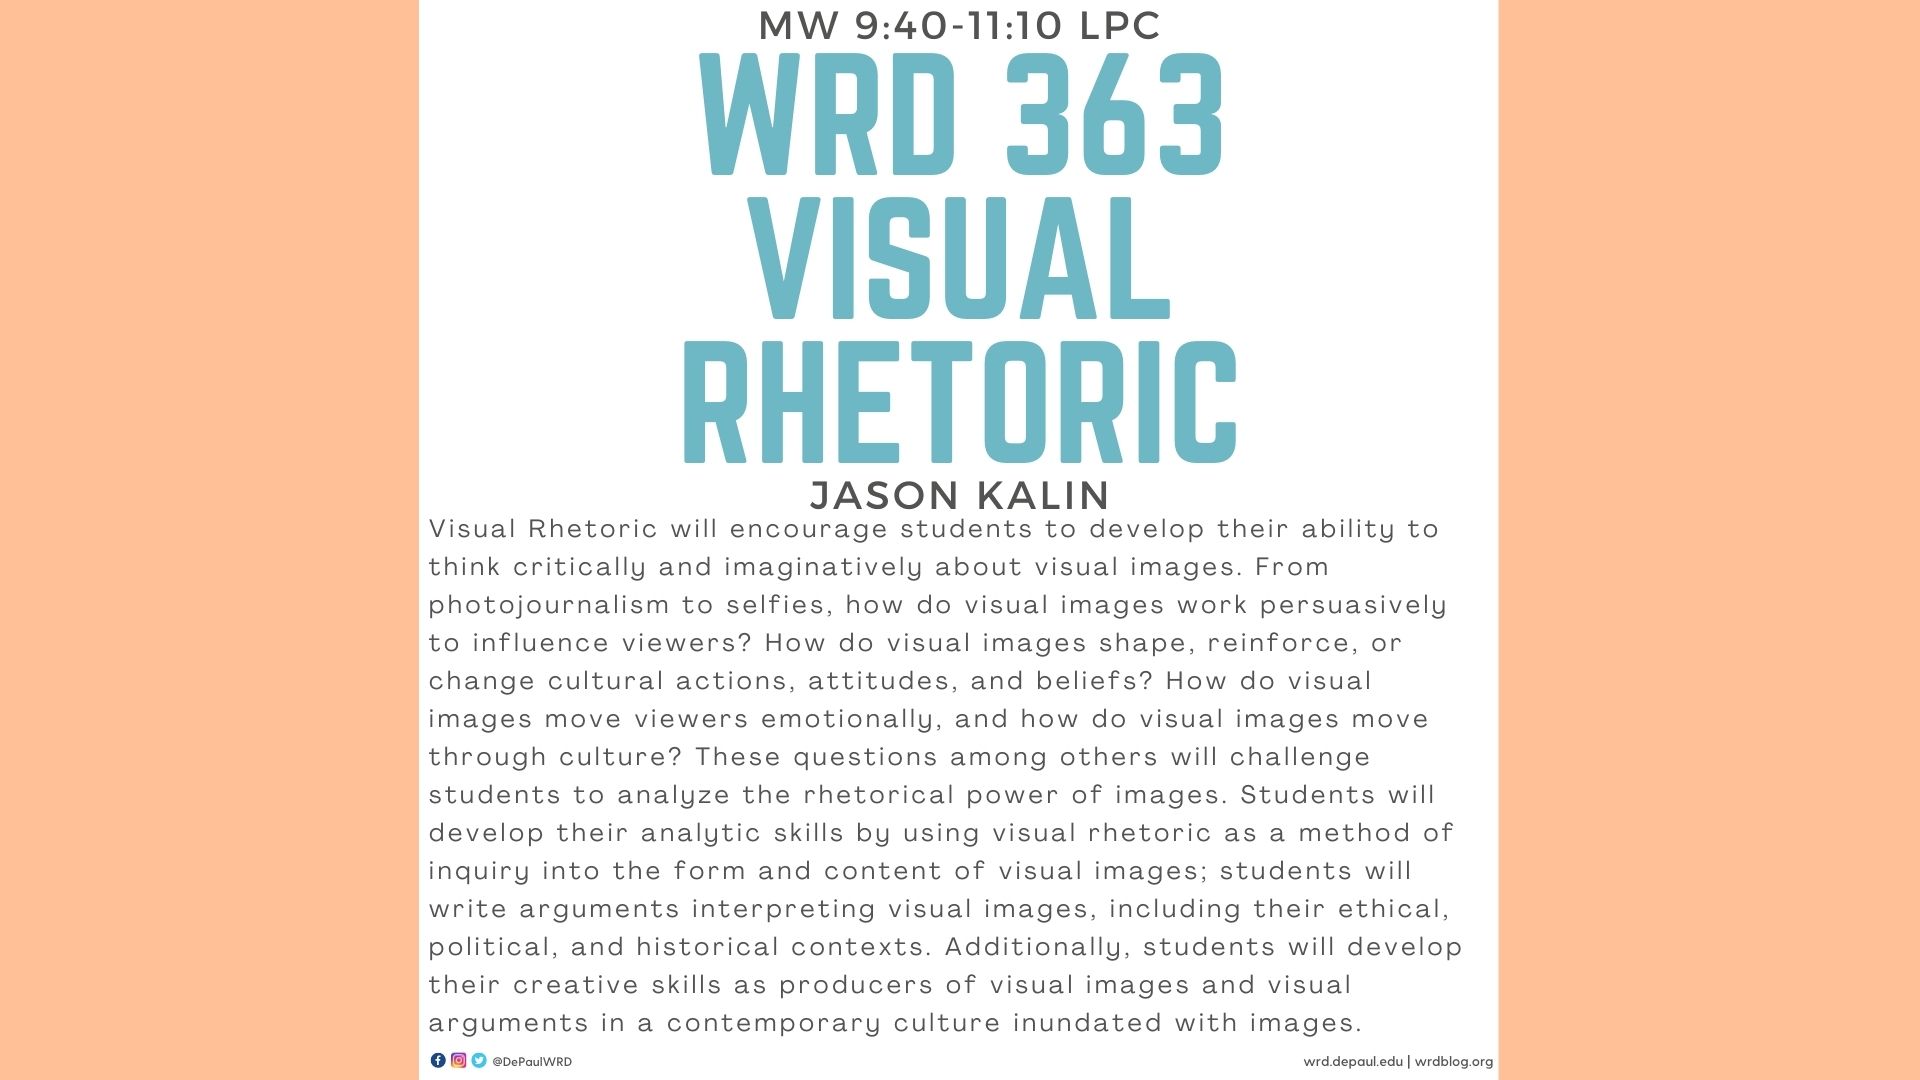 WRD 383 Visual Rhetoric